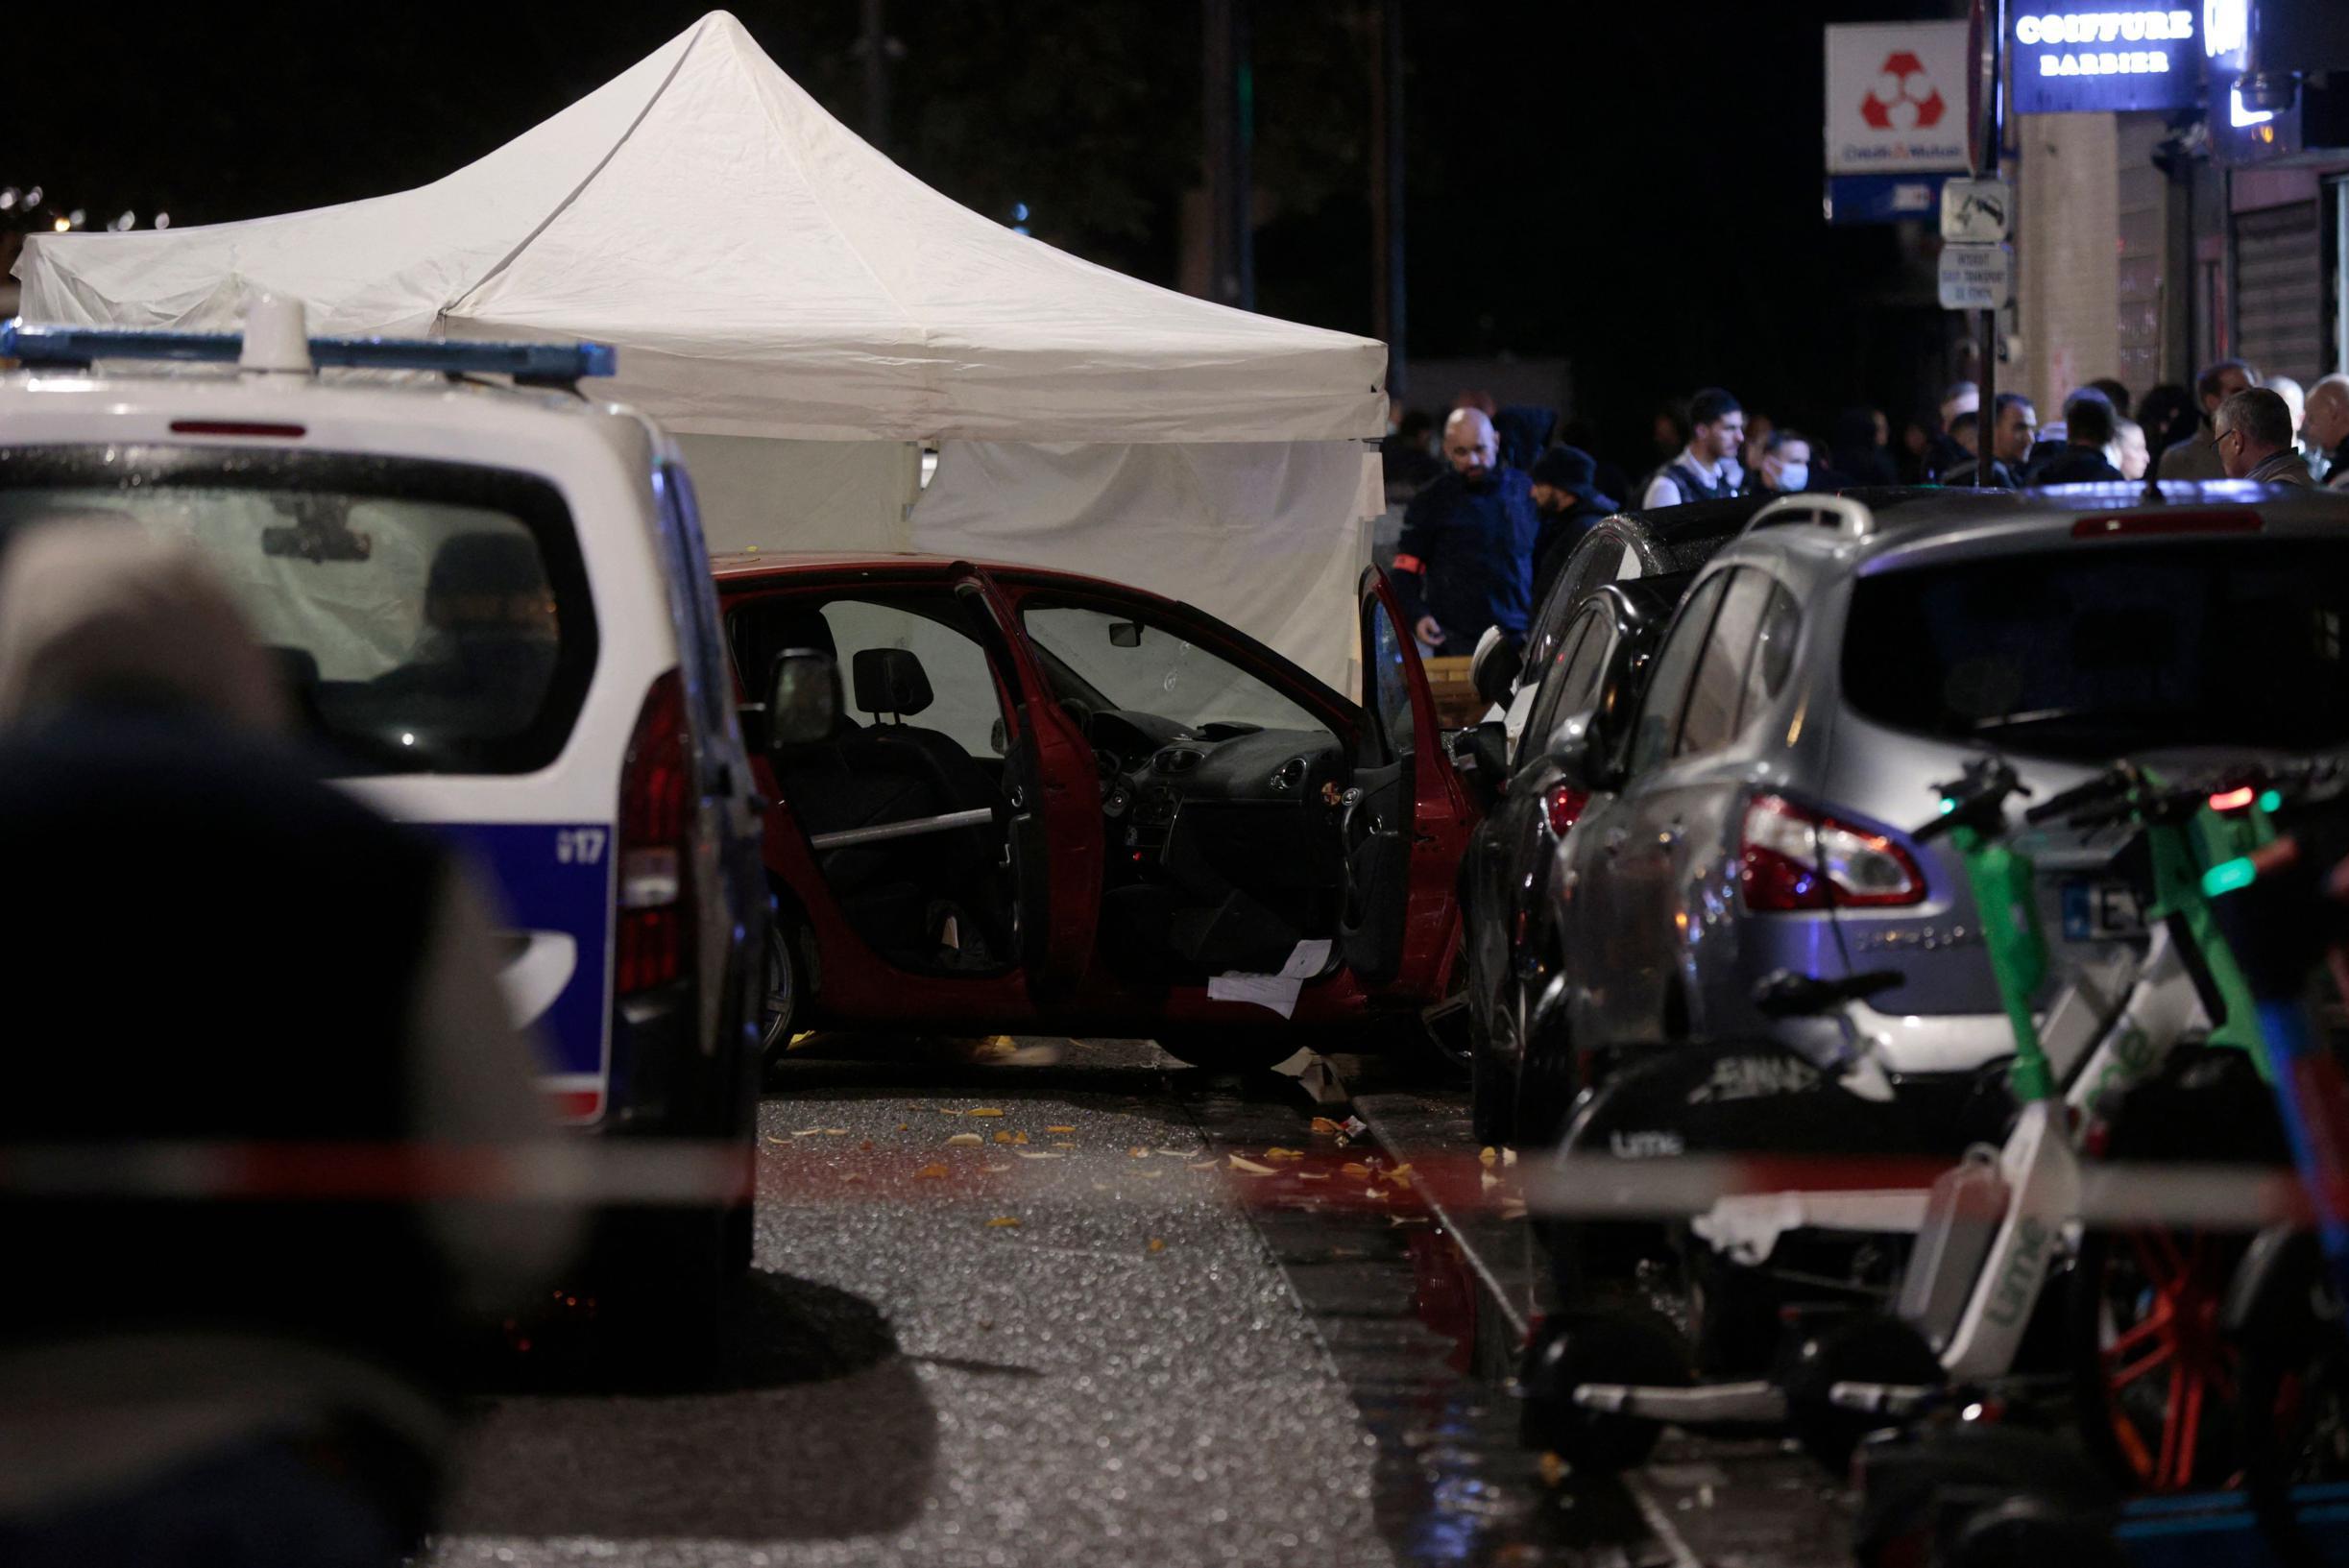 Тело девочки (12 лет) было найдено в чемодане перед многоквартирным домом в Париже, шестеро подозреваемых арестованы.